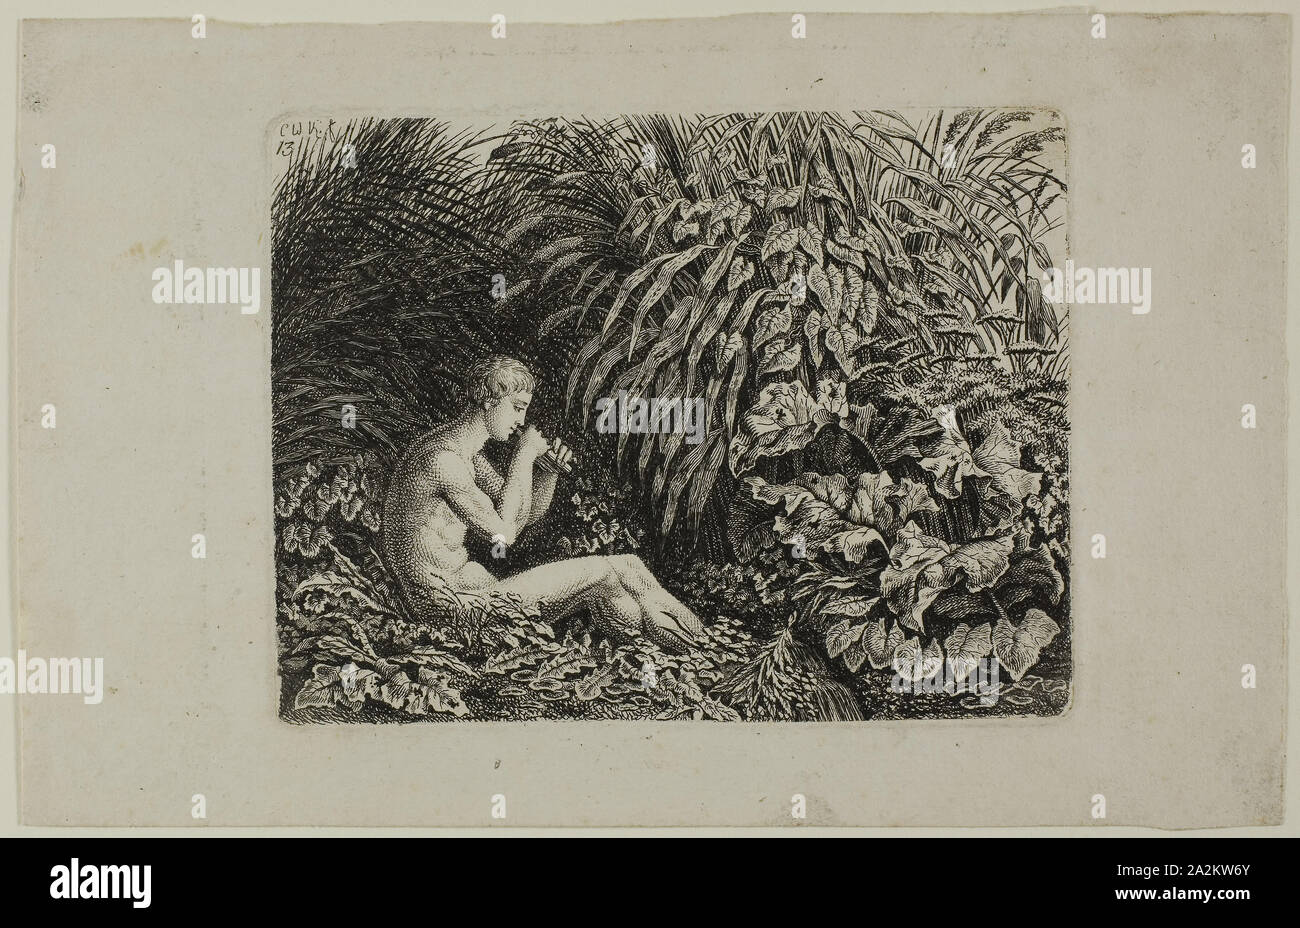 La gioventù giocando canalizzazioni del Pan, 1800, Carl Wilhelm Kolbe, il sambuco, Tedesco, 1759-1835, Germania, incisione su carta, 101 x 131 mm Foto Stock